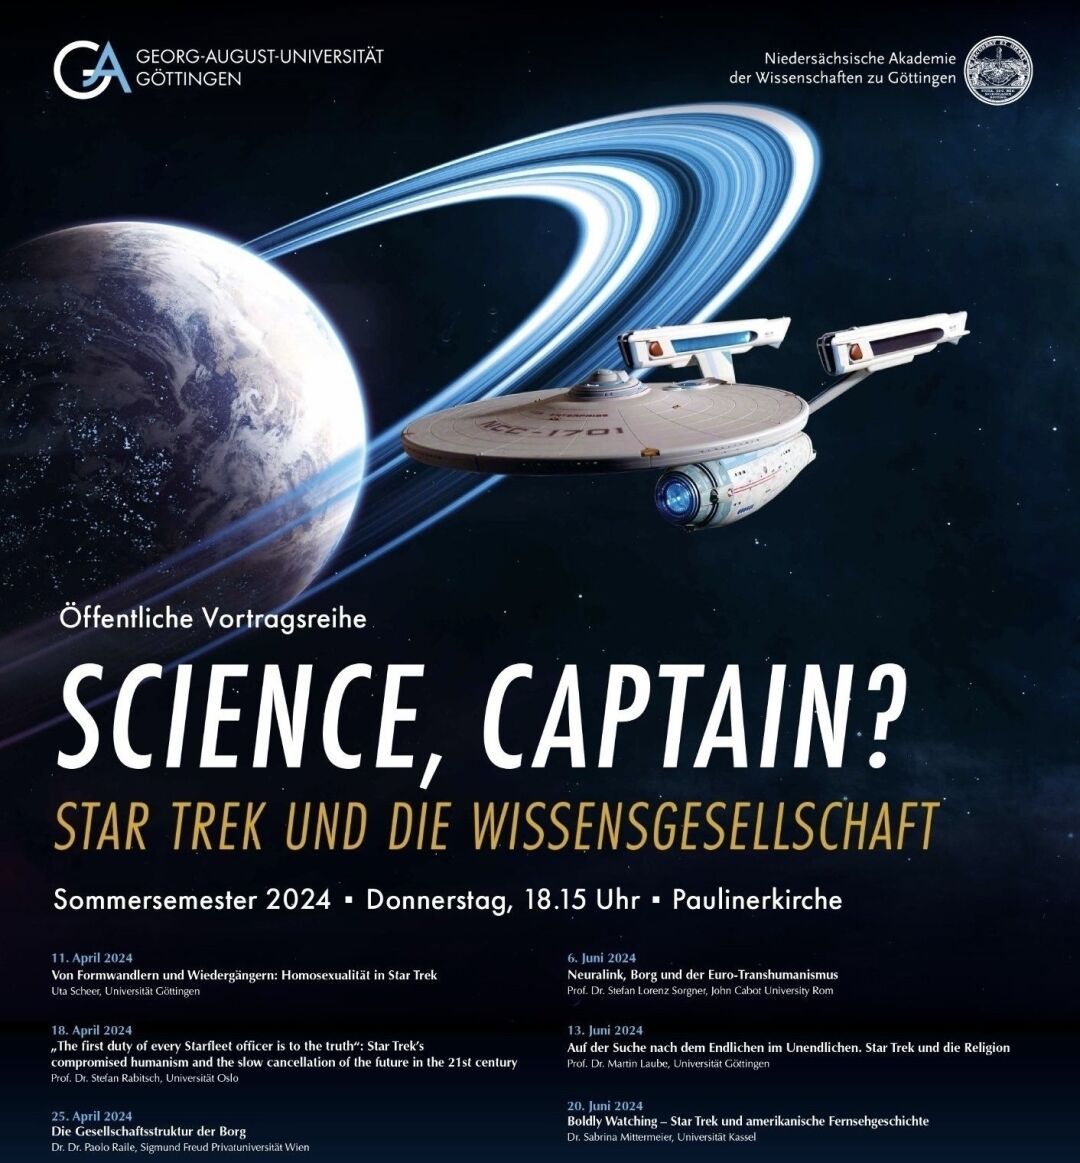 Bitte was?! 🤩 Die nächste Ringvorlesung in #Göttingen dreht sich nur um #StarTrek – wissenschaftlich, popkulturell, ethisch… Ich glaube, meine Donnerstage sind verplant 🖖 https://www.uni-goettingen.de/de/685186.html